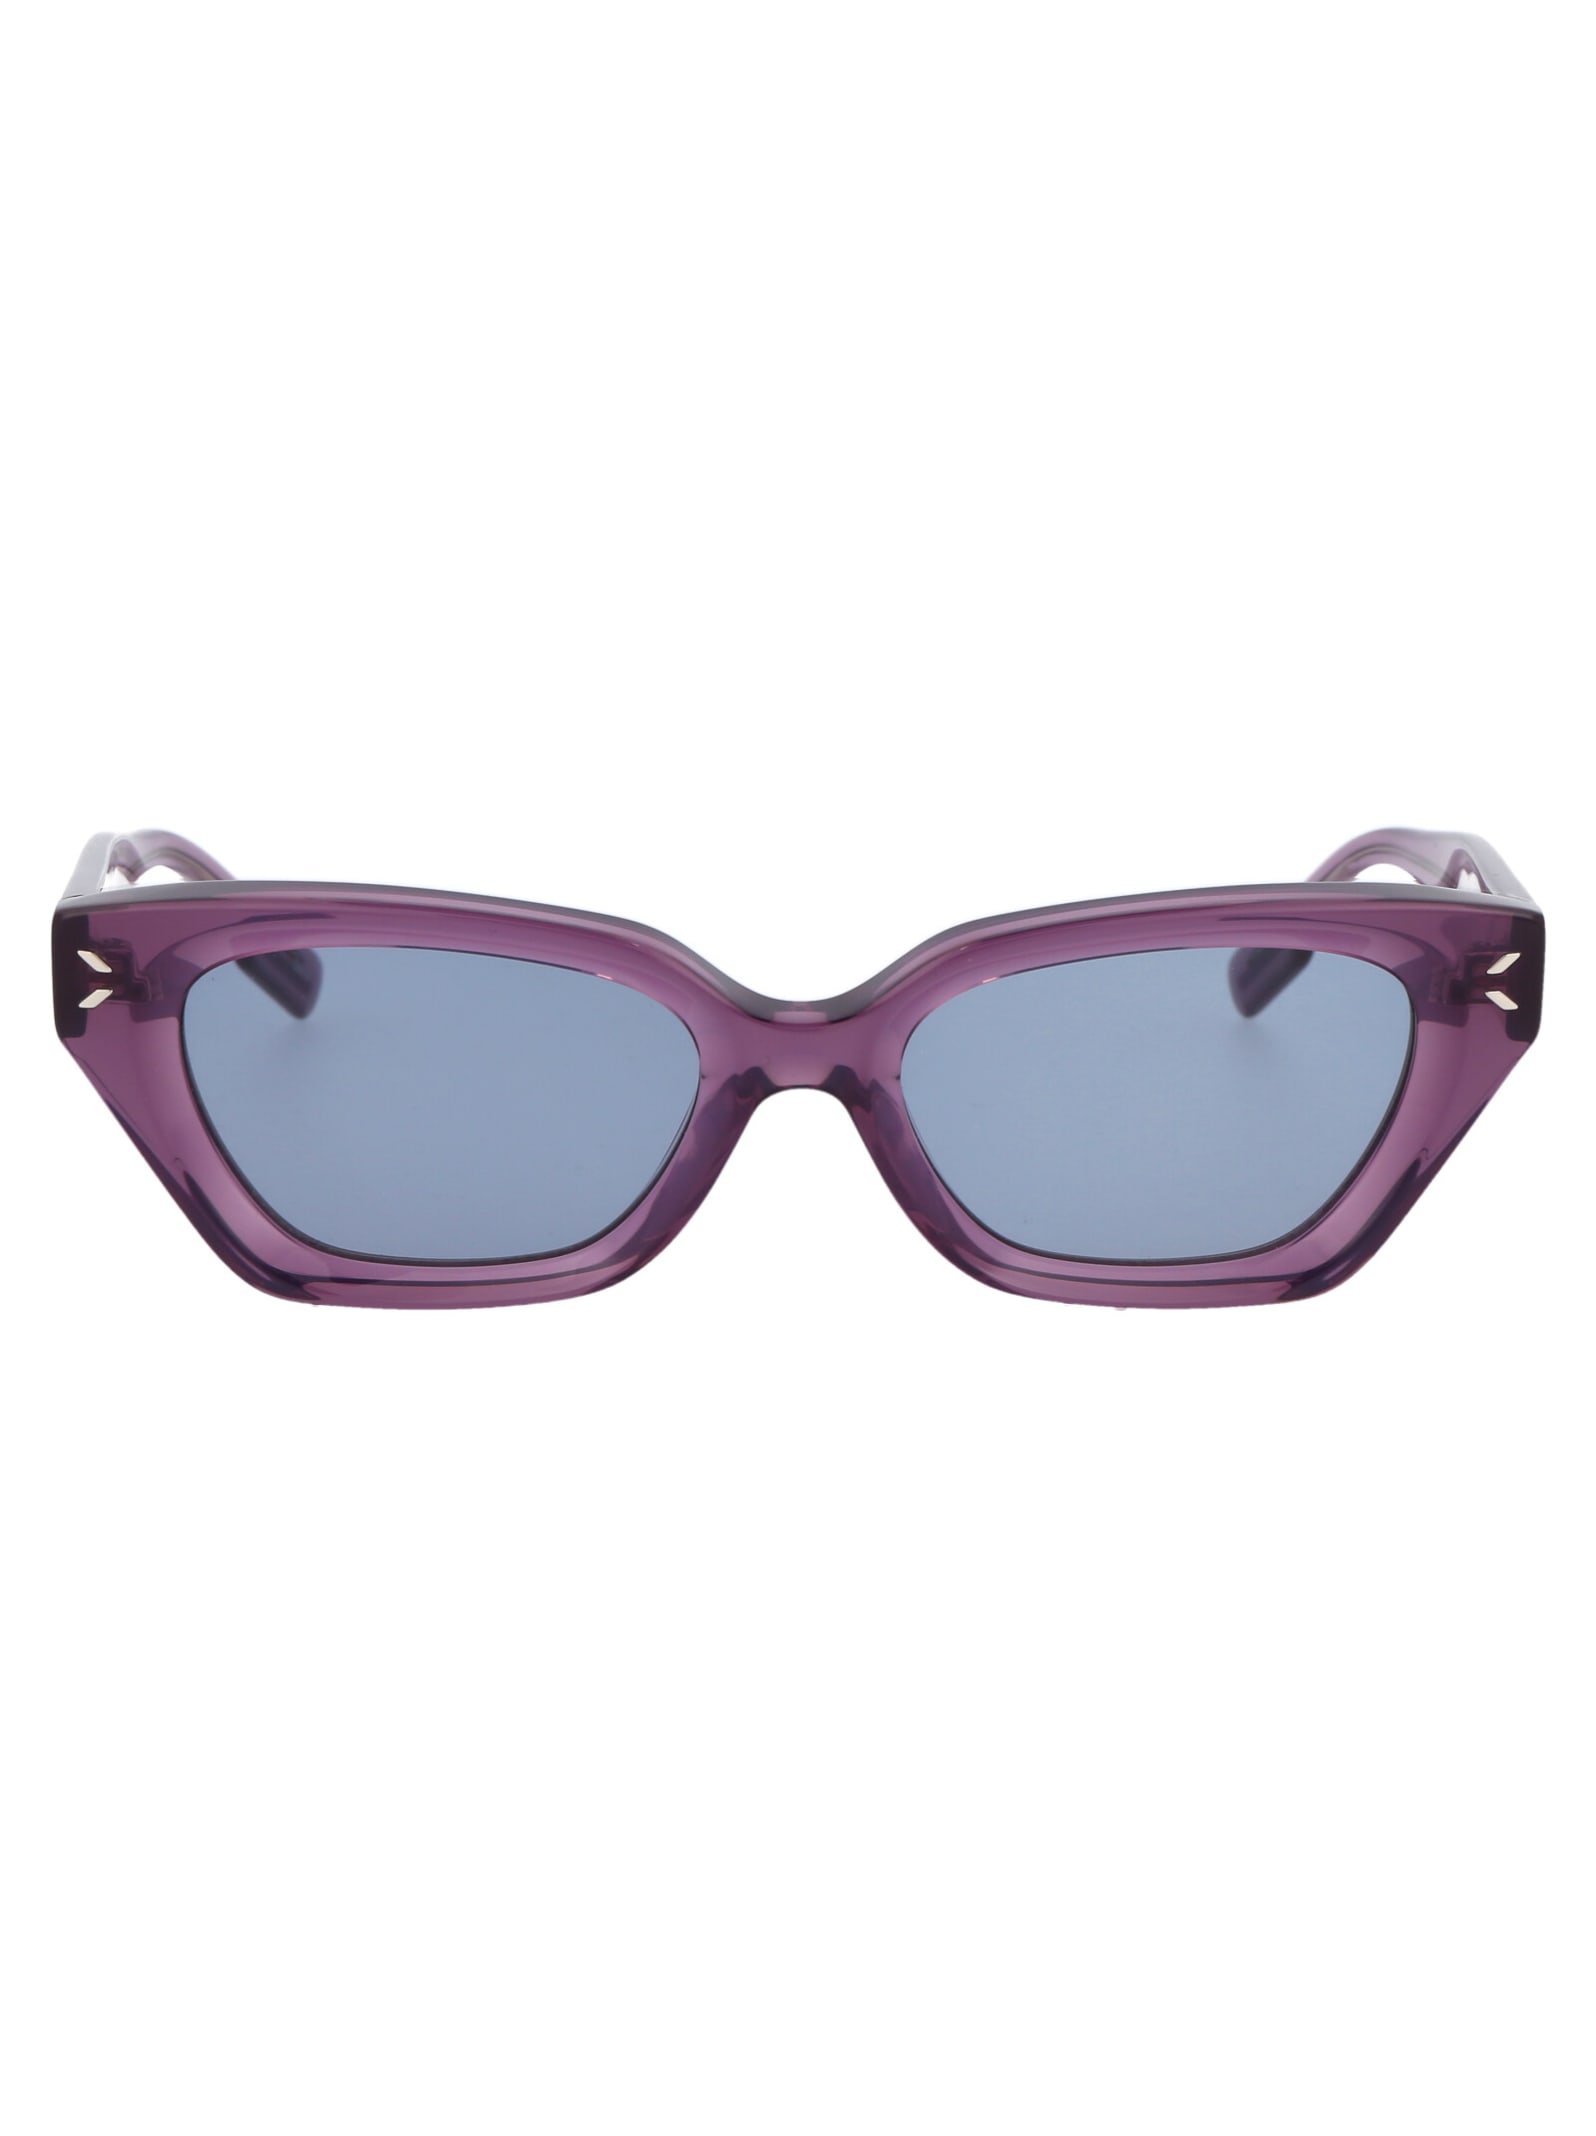 McQ Alexander McQueen Mq0345s Sunglasses